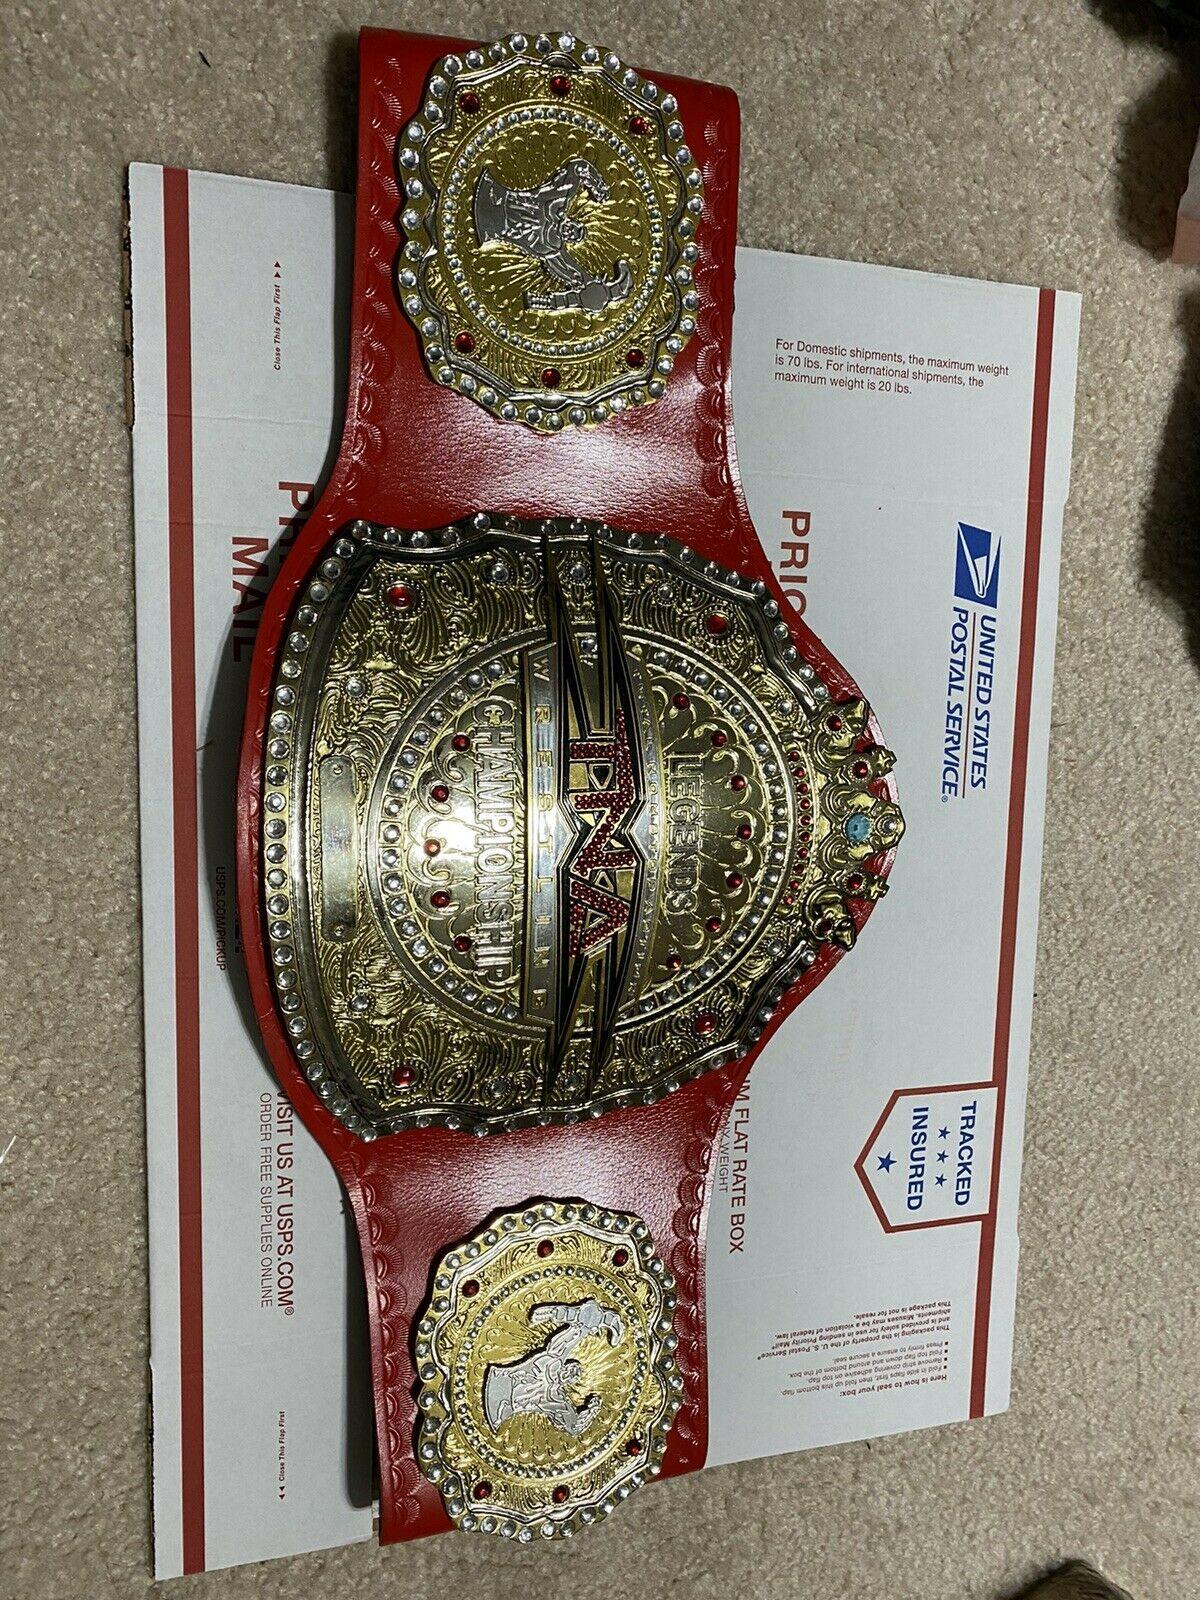 TNA LEGENDS Zinc Championship Belt - Zees Belts